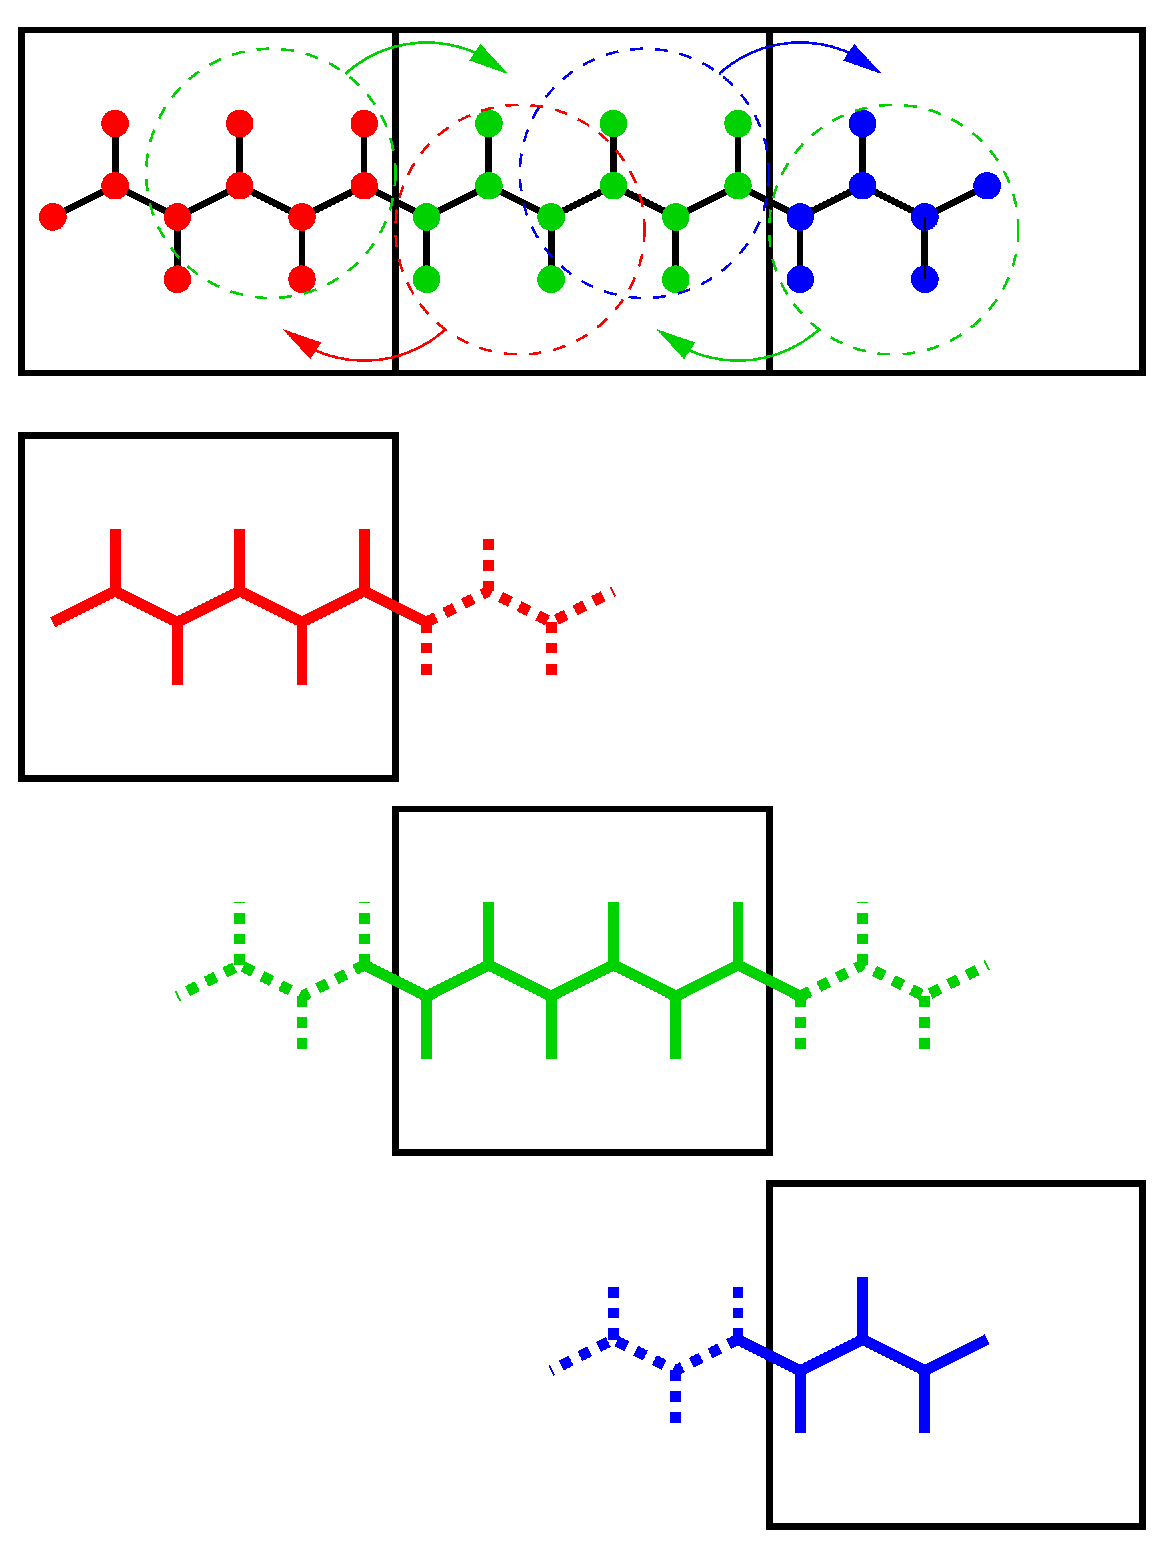 图3.14: P-LINCS算法并行设置示例. 一个分子被划分到3个区域分解晶胞中, 使用的矩阵展开阶数为3. 上面部分展示了需要通讯的原子坐标及其要通讯到的晶胞. 下面部分展示了三个晶胞中各自的局部约束(实线)和非局部约束(虚线).